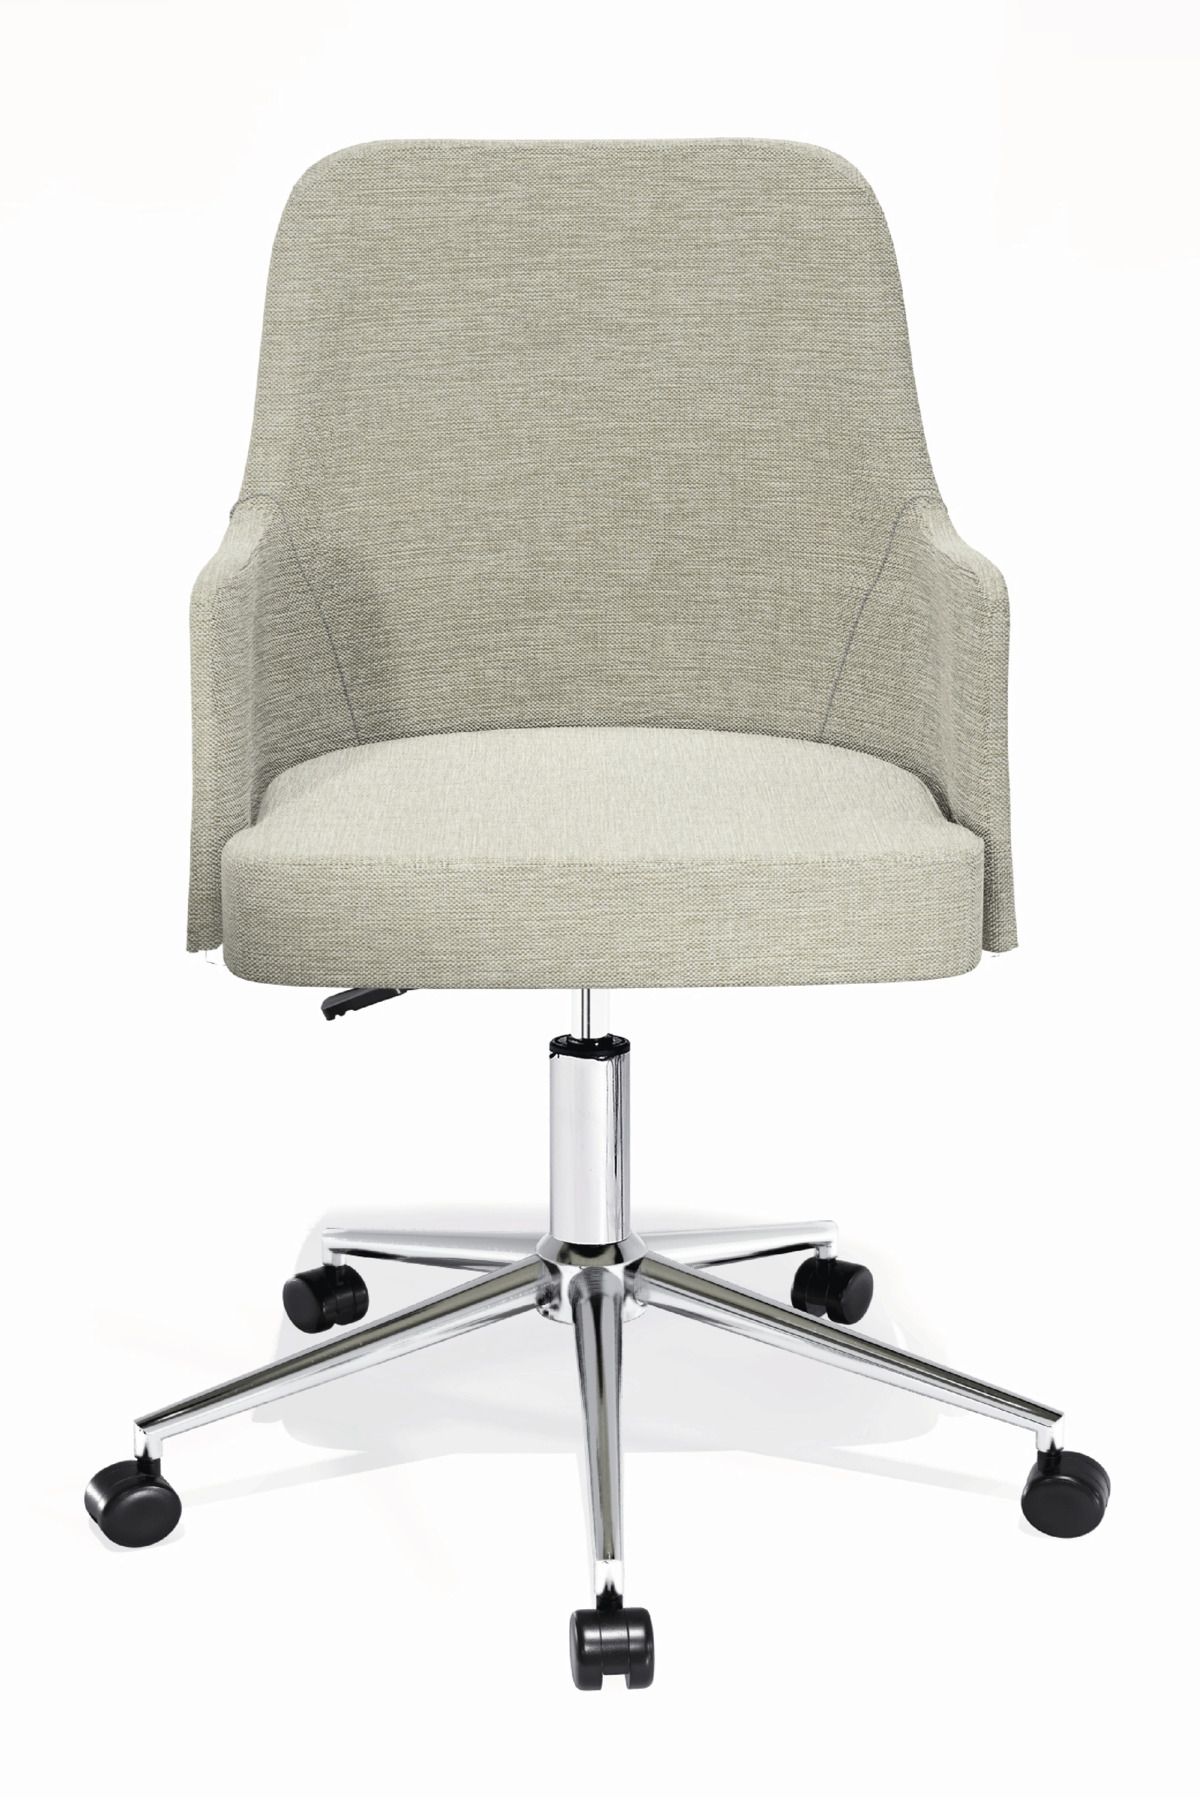 HAUSEBOX Louis Silinebilir Keten Kumaş - Ofis Çalışma Koltuğu & Sandalyesi (KREM/KROM METAL AYAK)